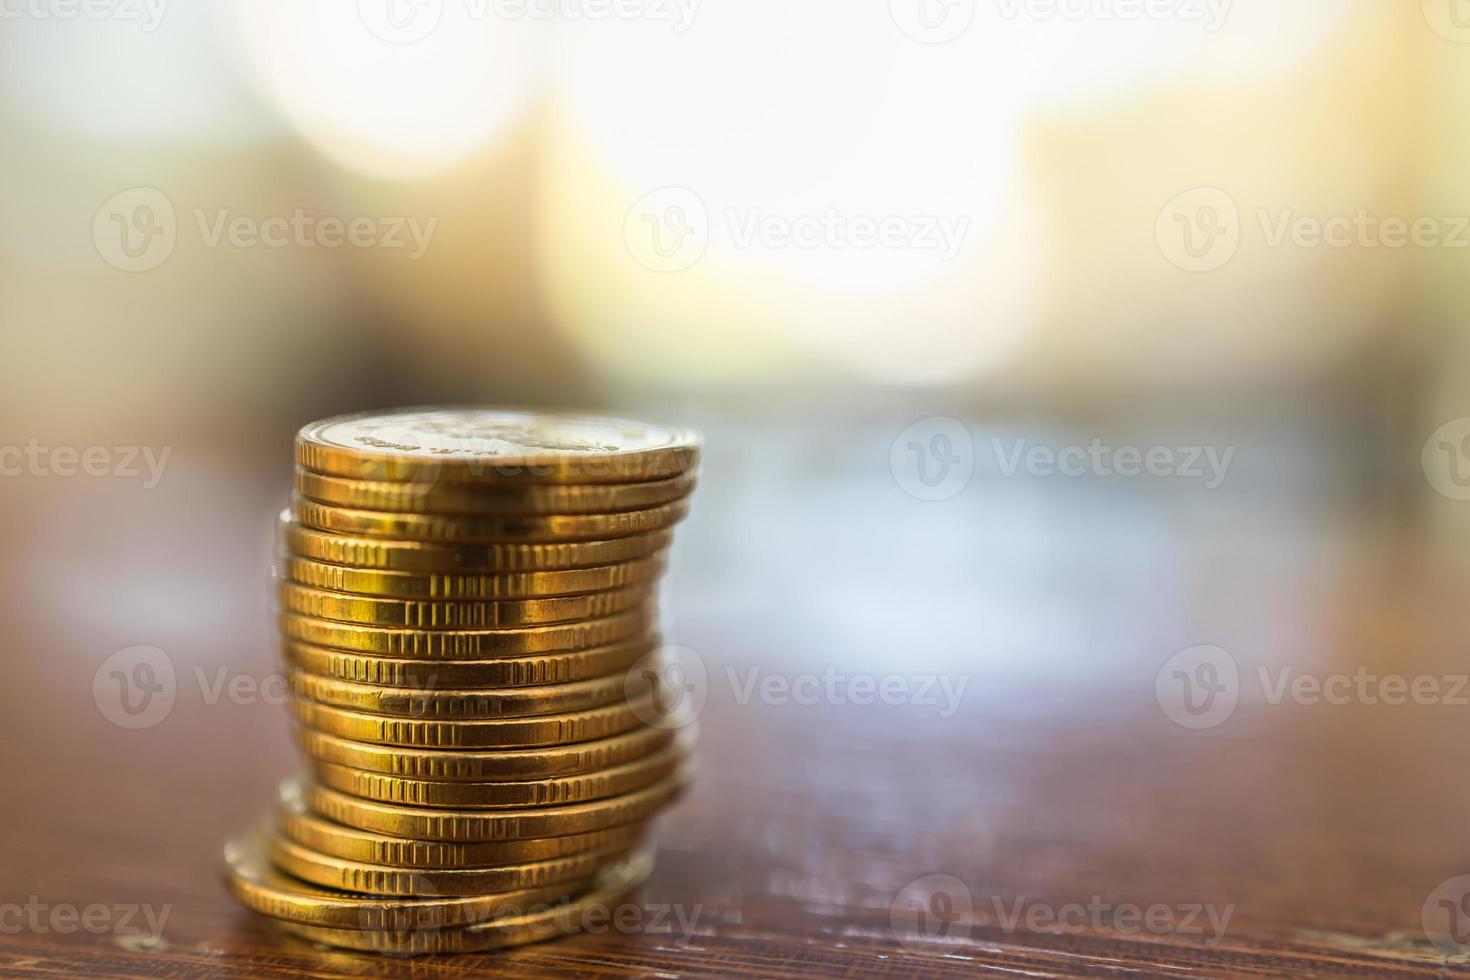 företag, pengar, ekonomi, säkerhet och sparande koncept. närbild av stack av guldmynt på träbord under solljus med kopia utrymme. foto